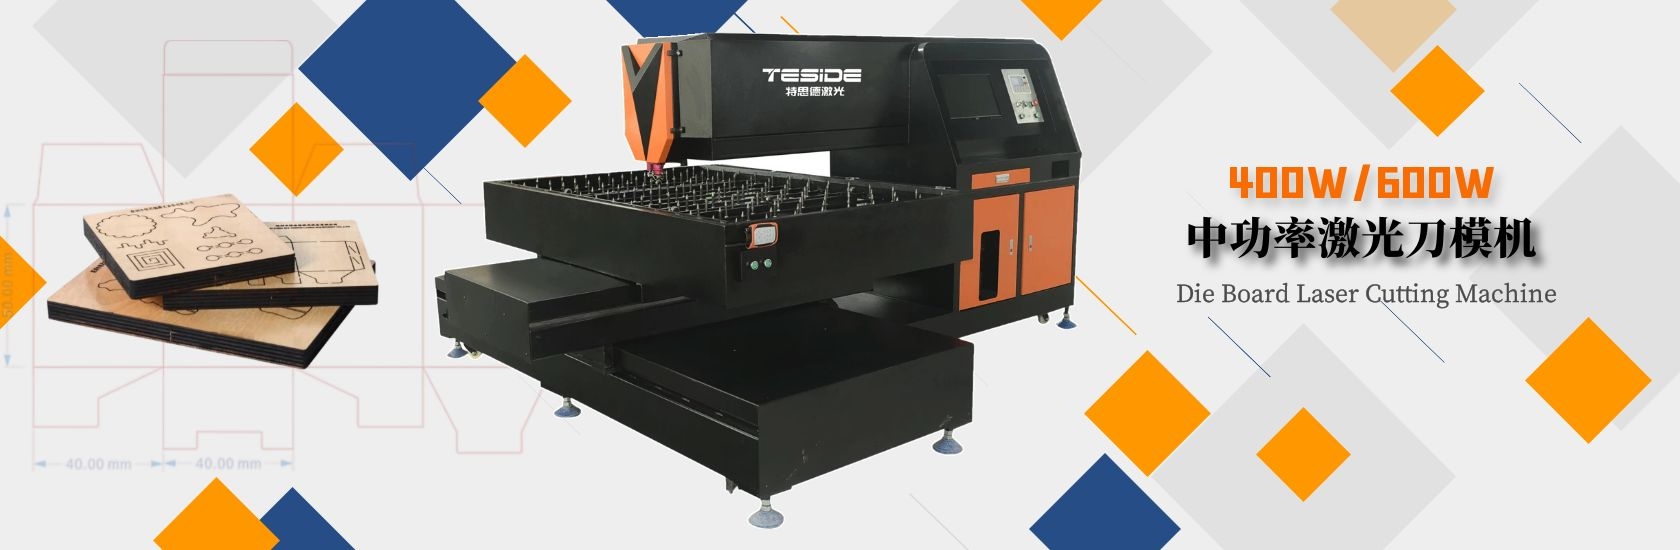 Professional laser die-cutting equipment manufacturer